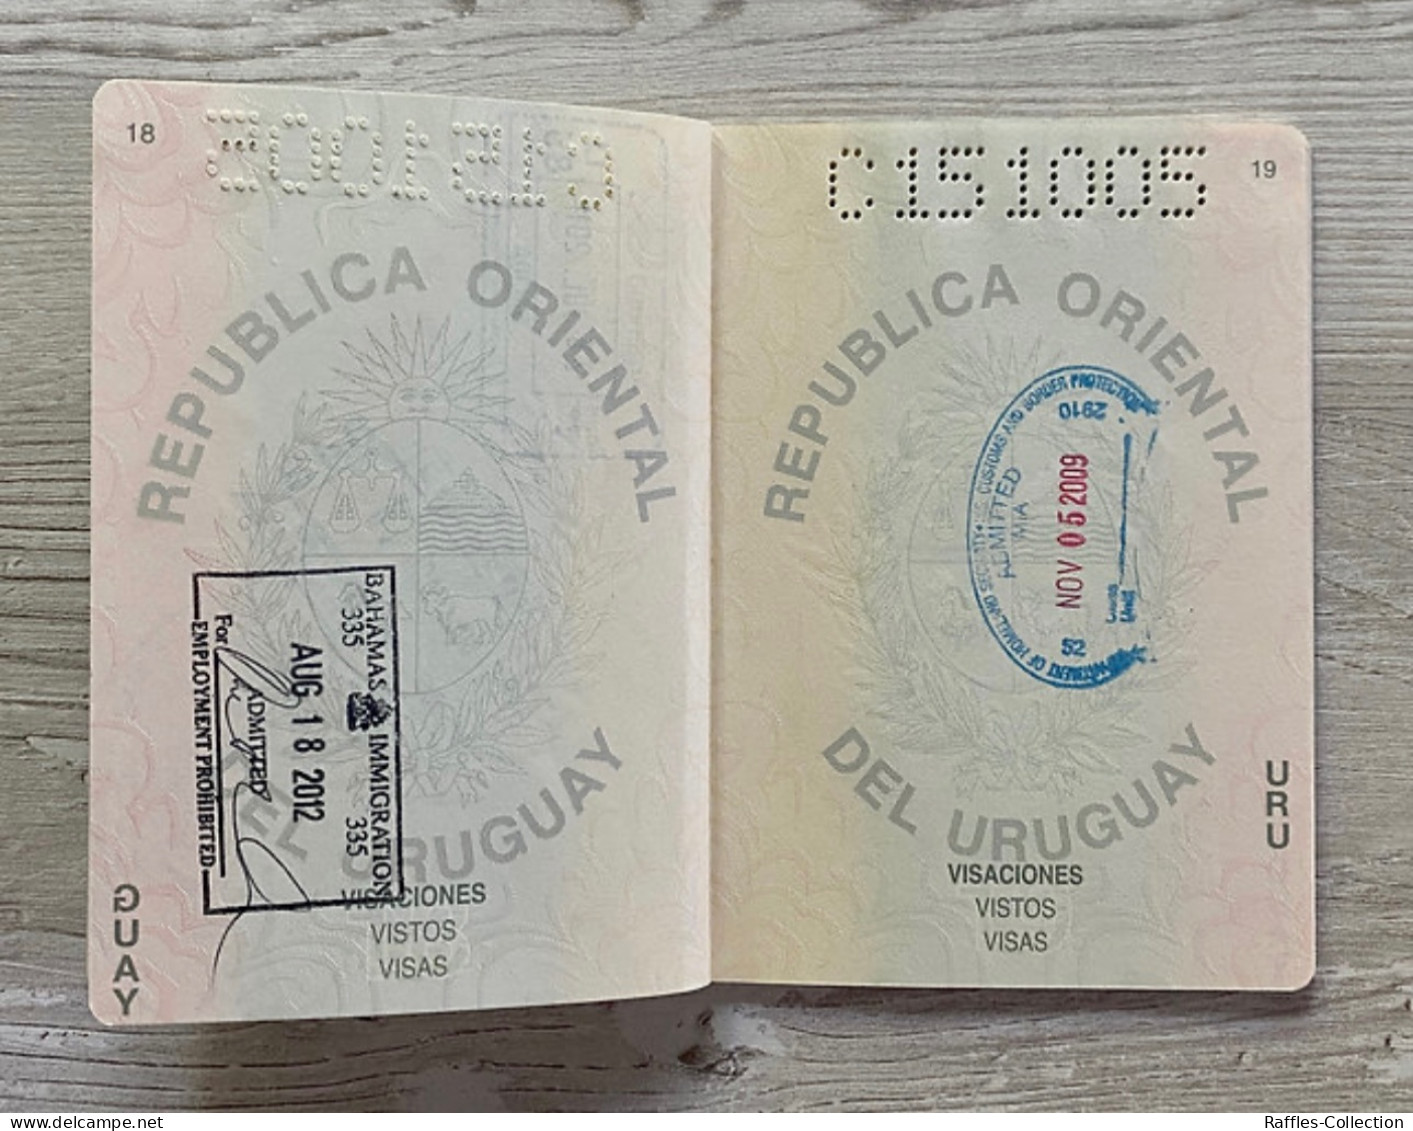 Uruguay passport passeport reisepass pasaporte passaporto